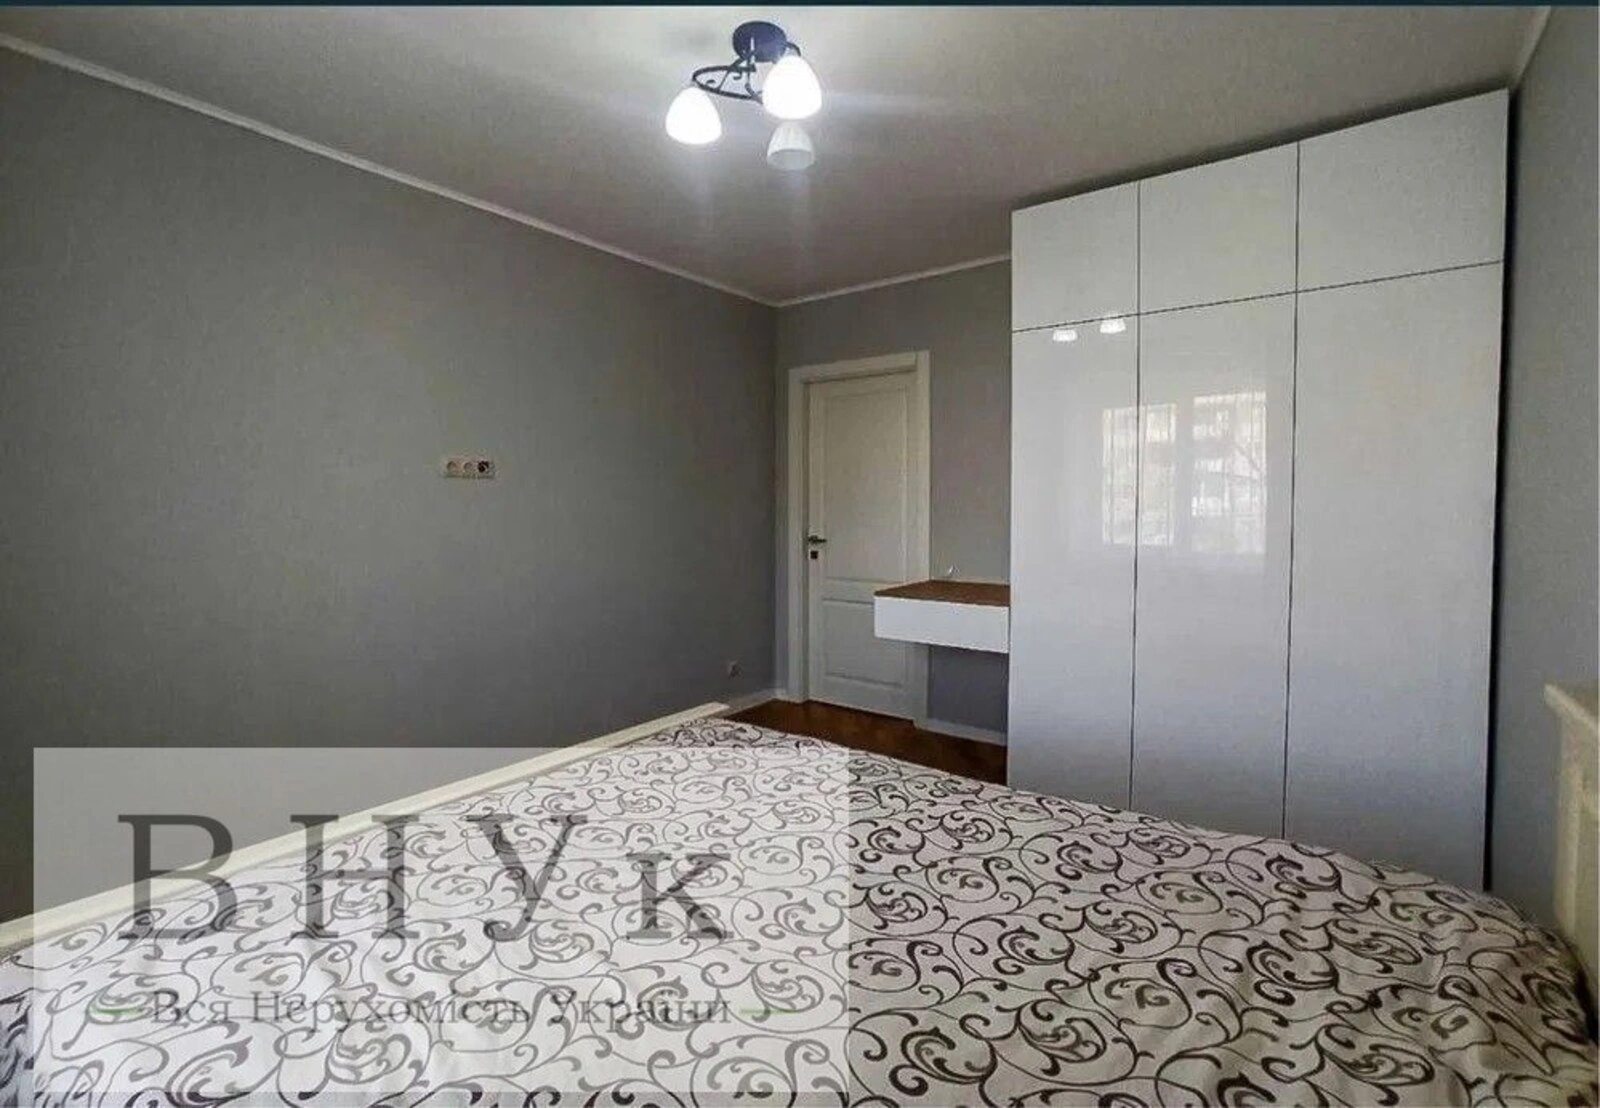 Apartments for sale. 65 m², 2nd floor/9 floors. Slastiona vul., Lviv. 